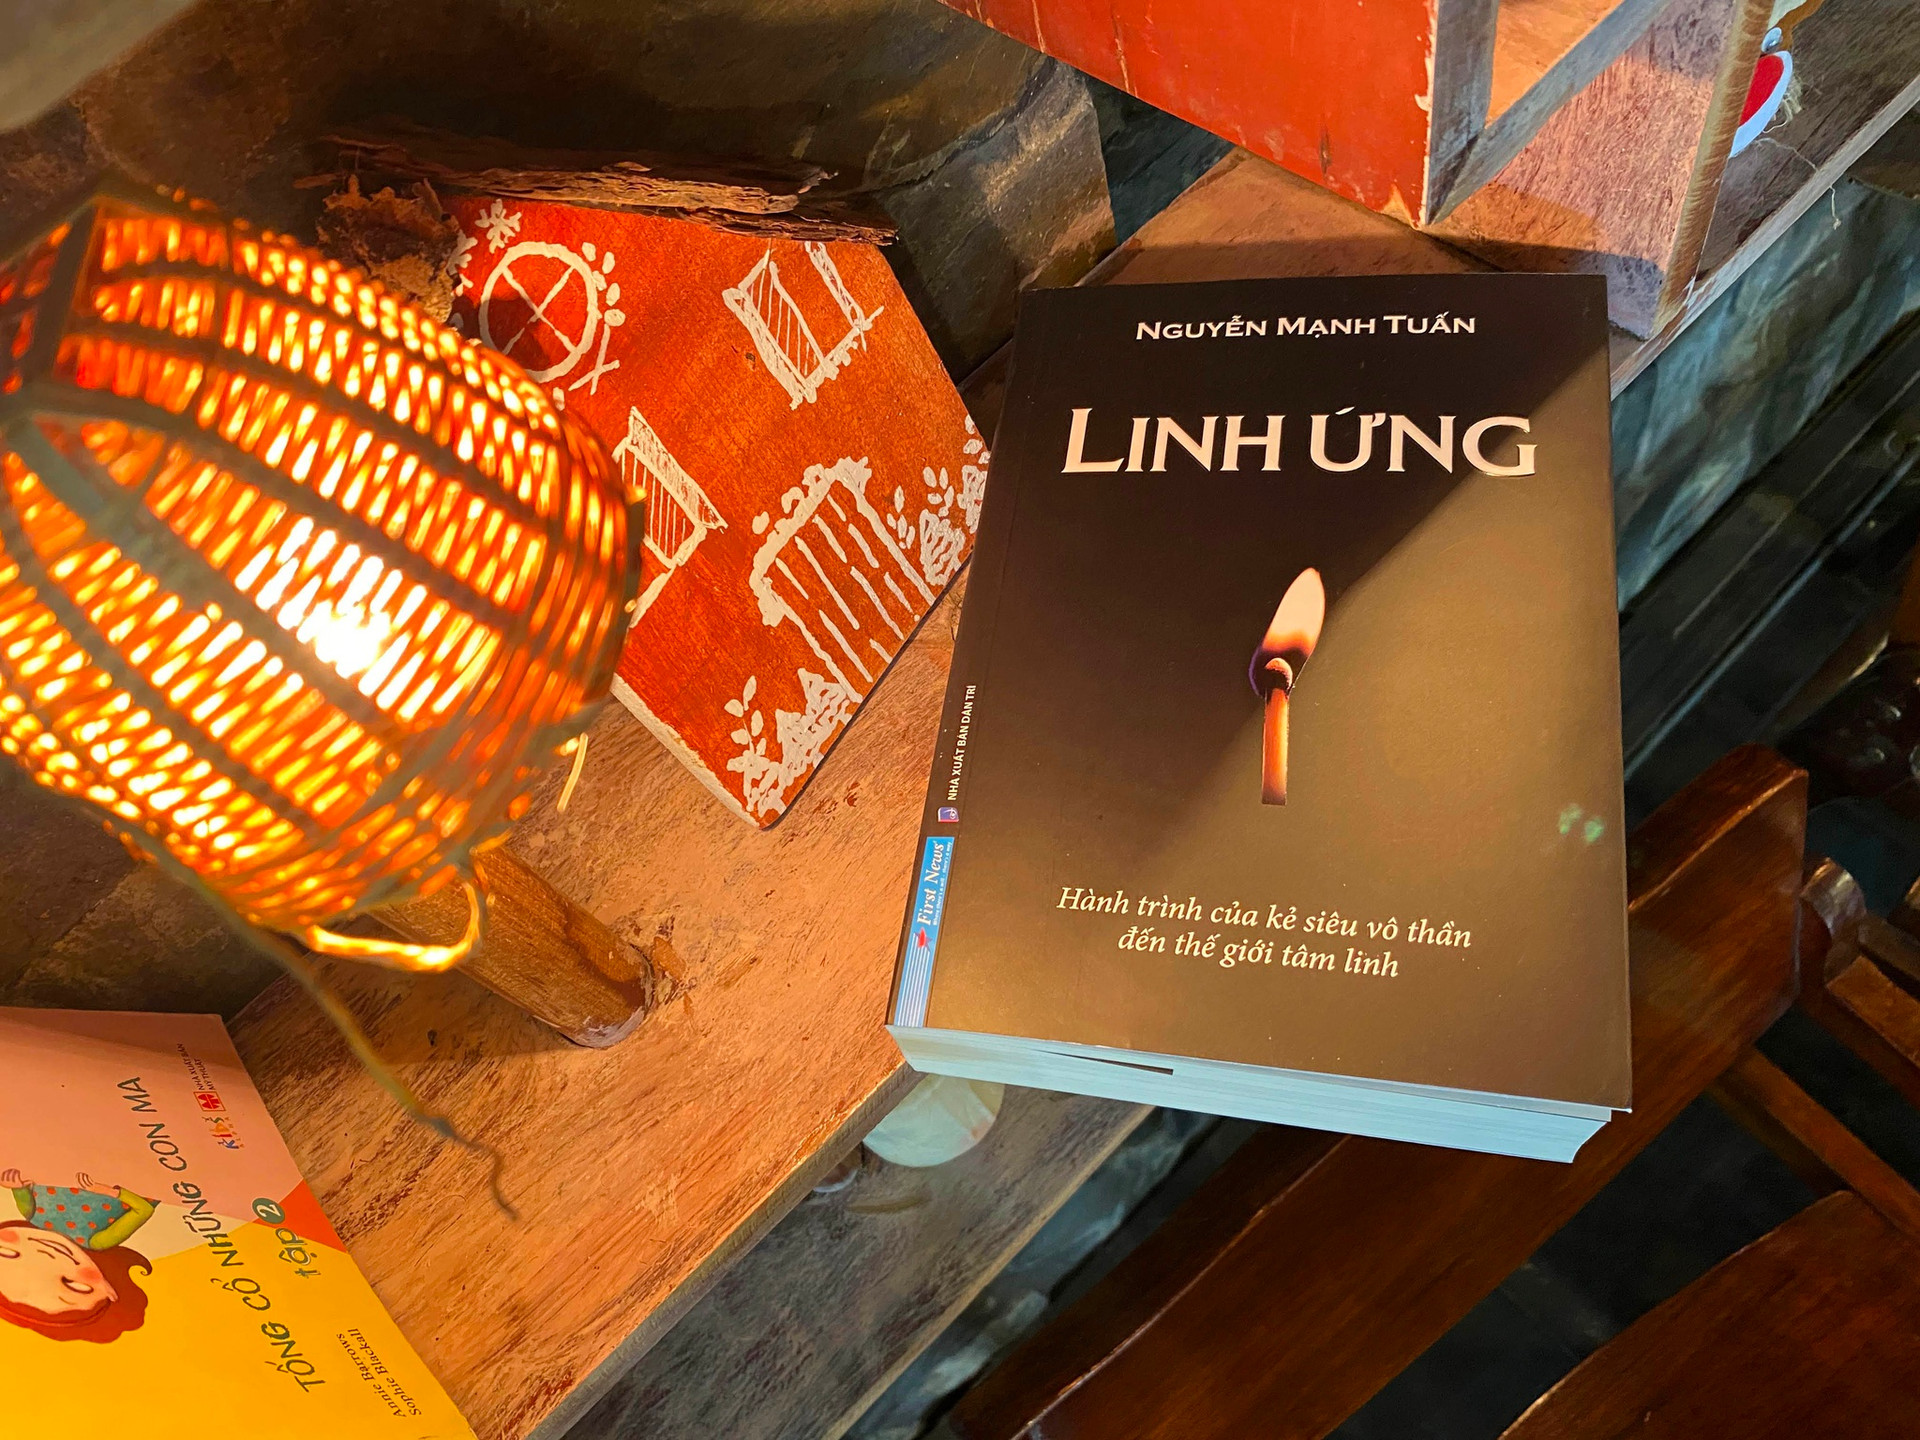 Nhà văn Nguyễn Mạnh Tuấn và câu chuyện đi tìm người anh liệt sĩ sau 40 năm - ảnh 2